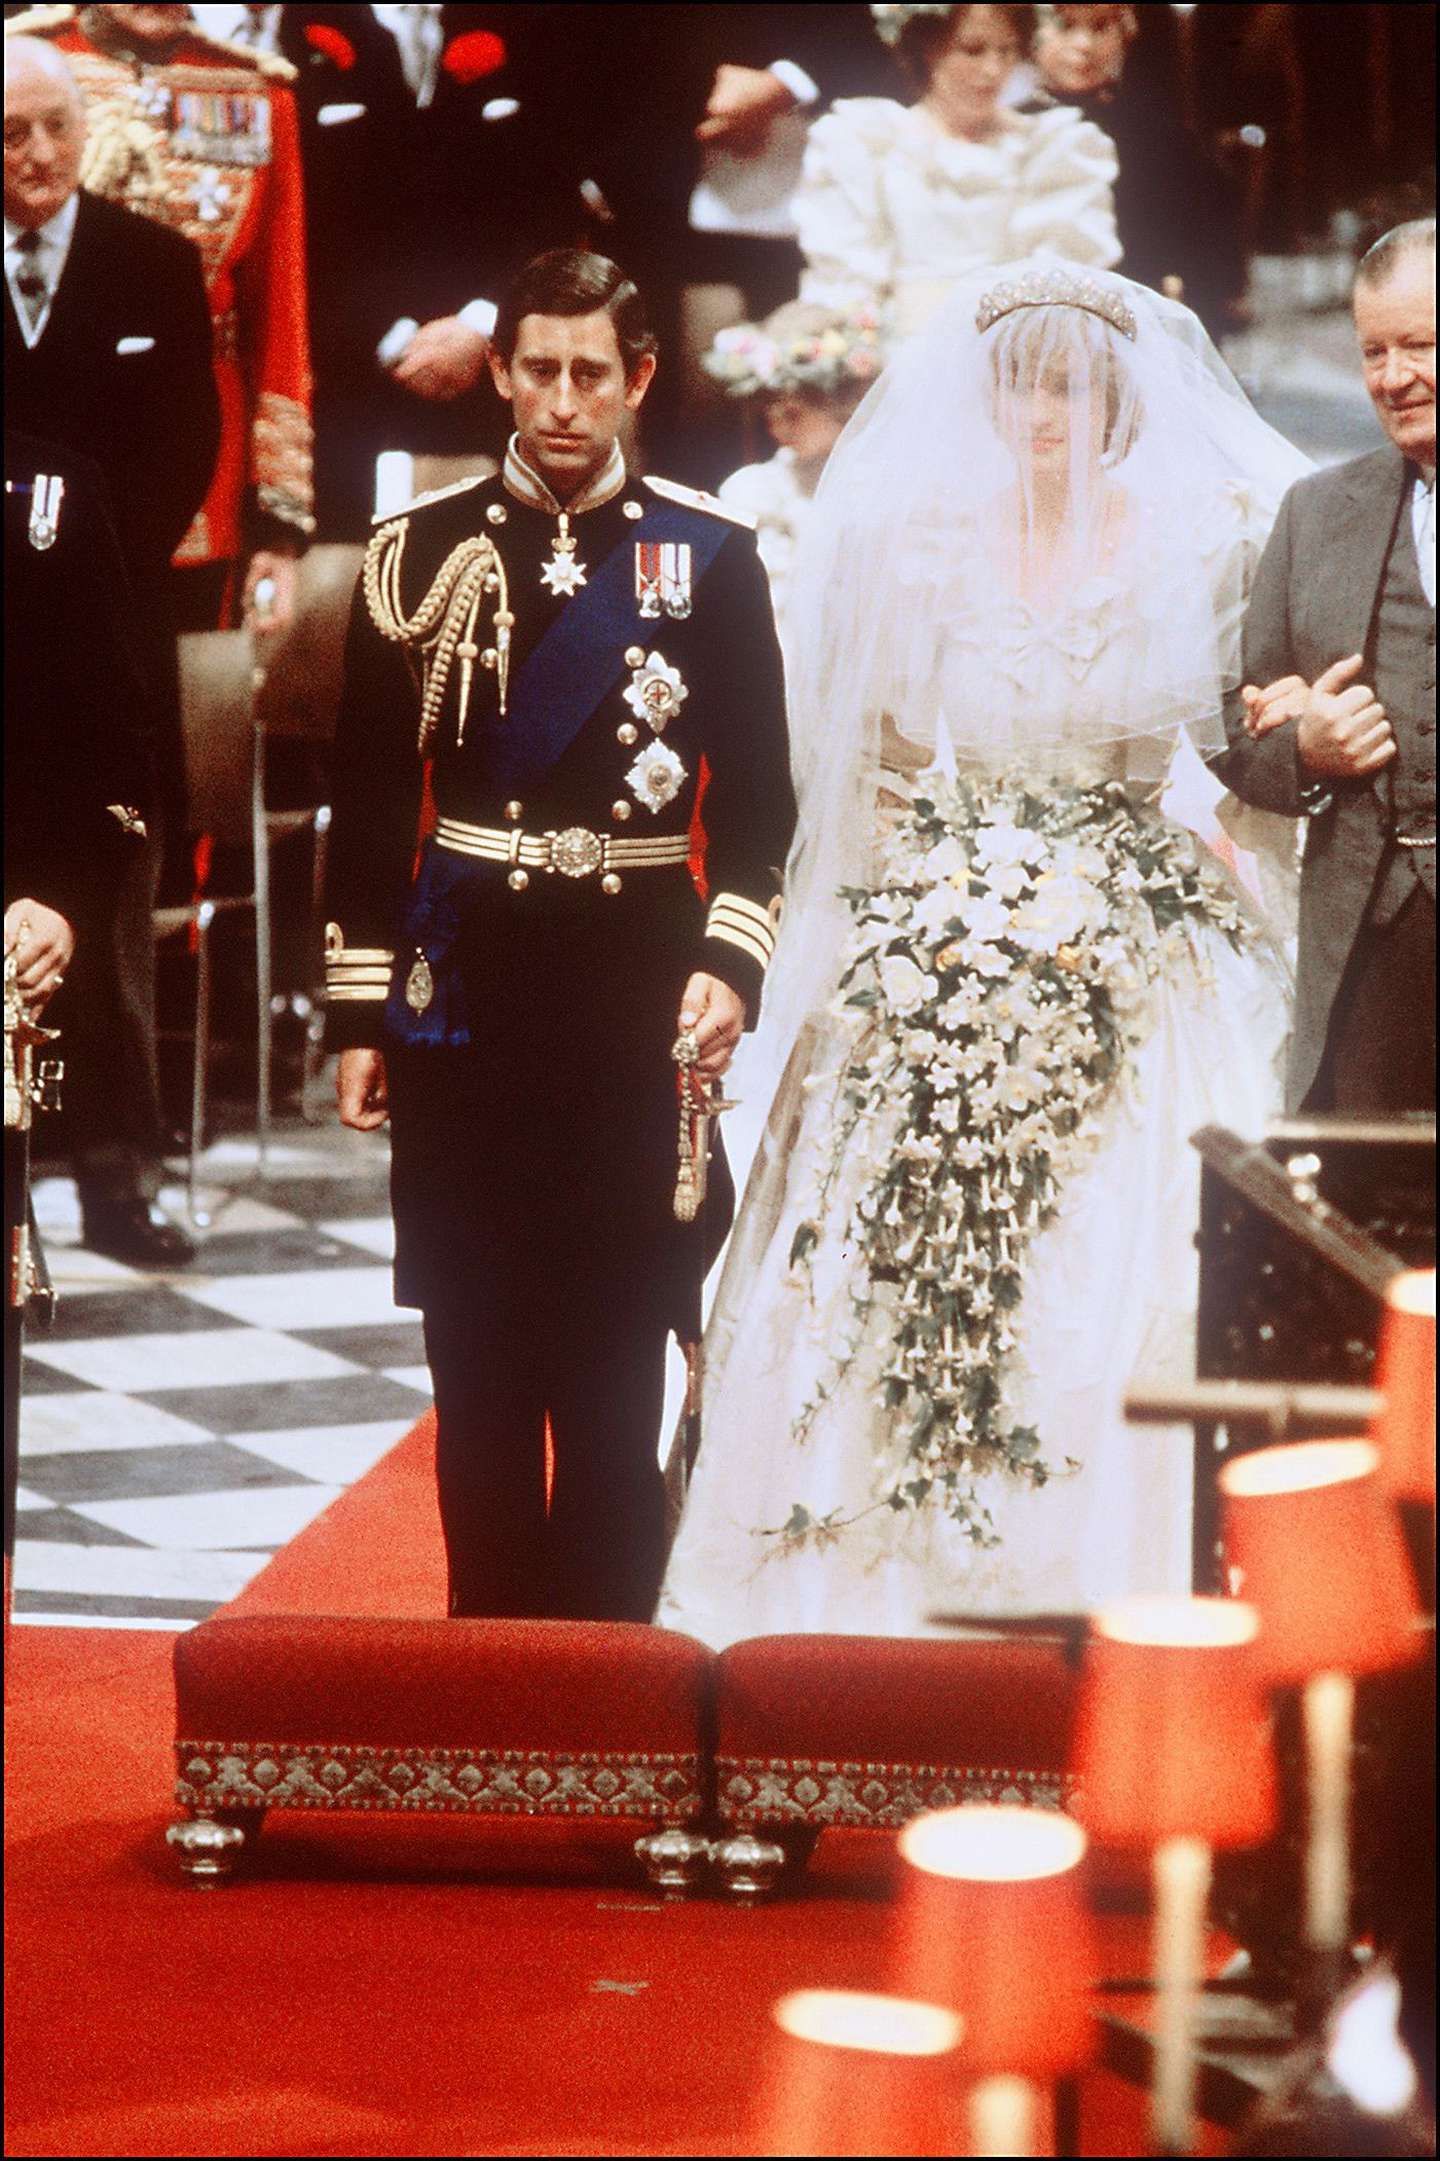 Caras | Se cumplen 40 años: todas las fotos de la boda Lady Di y Carlos